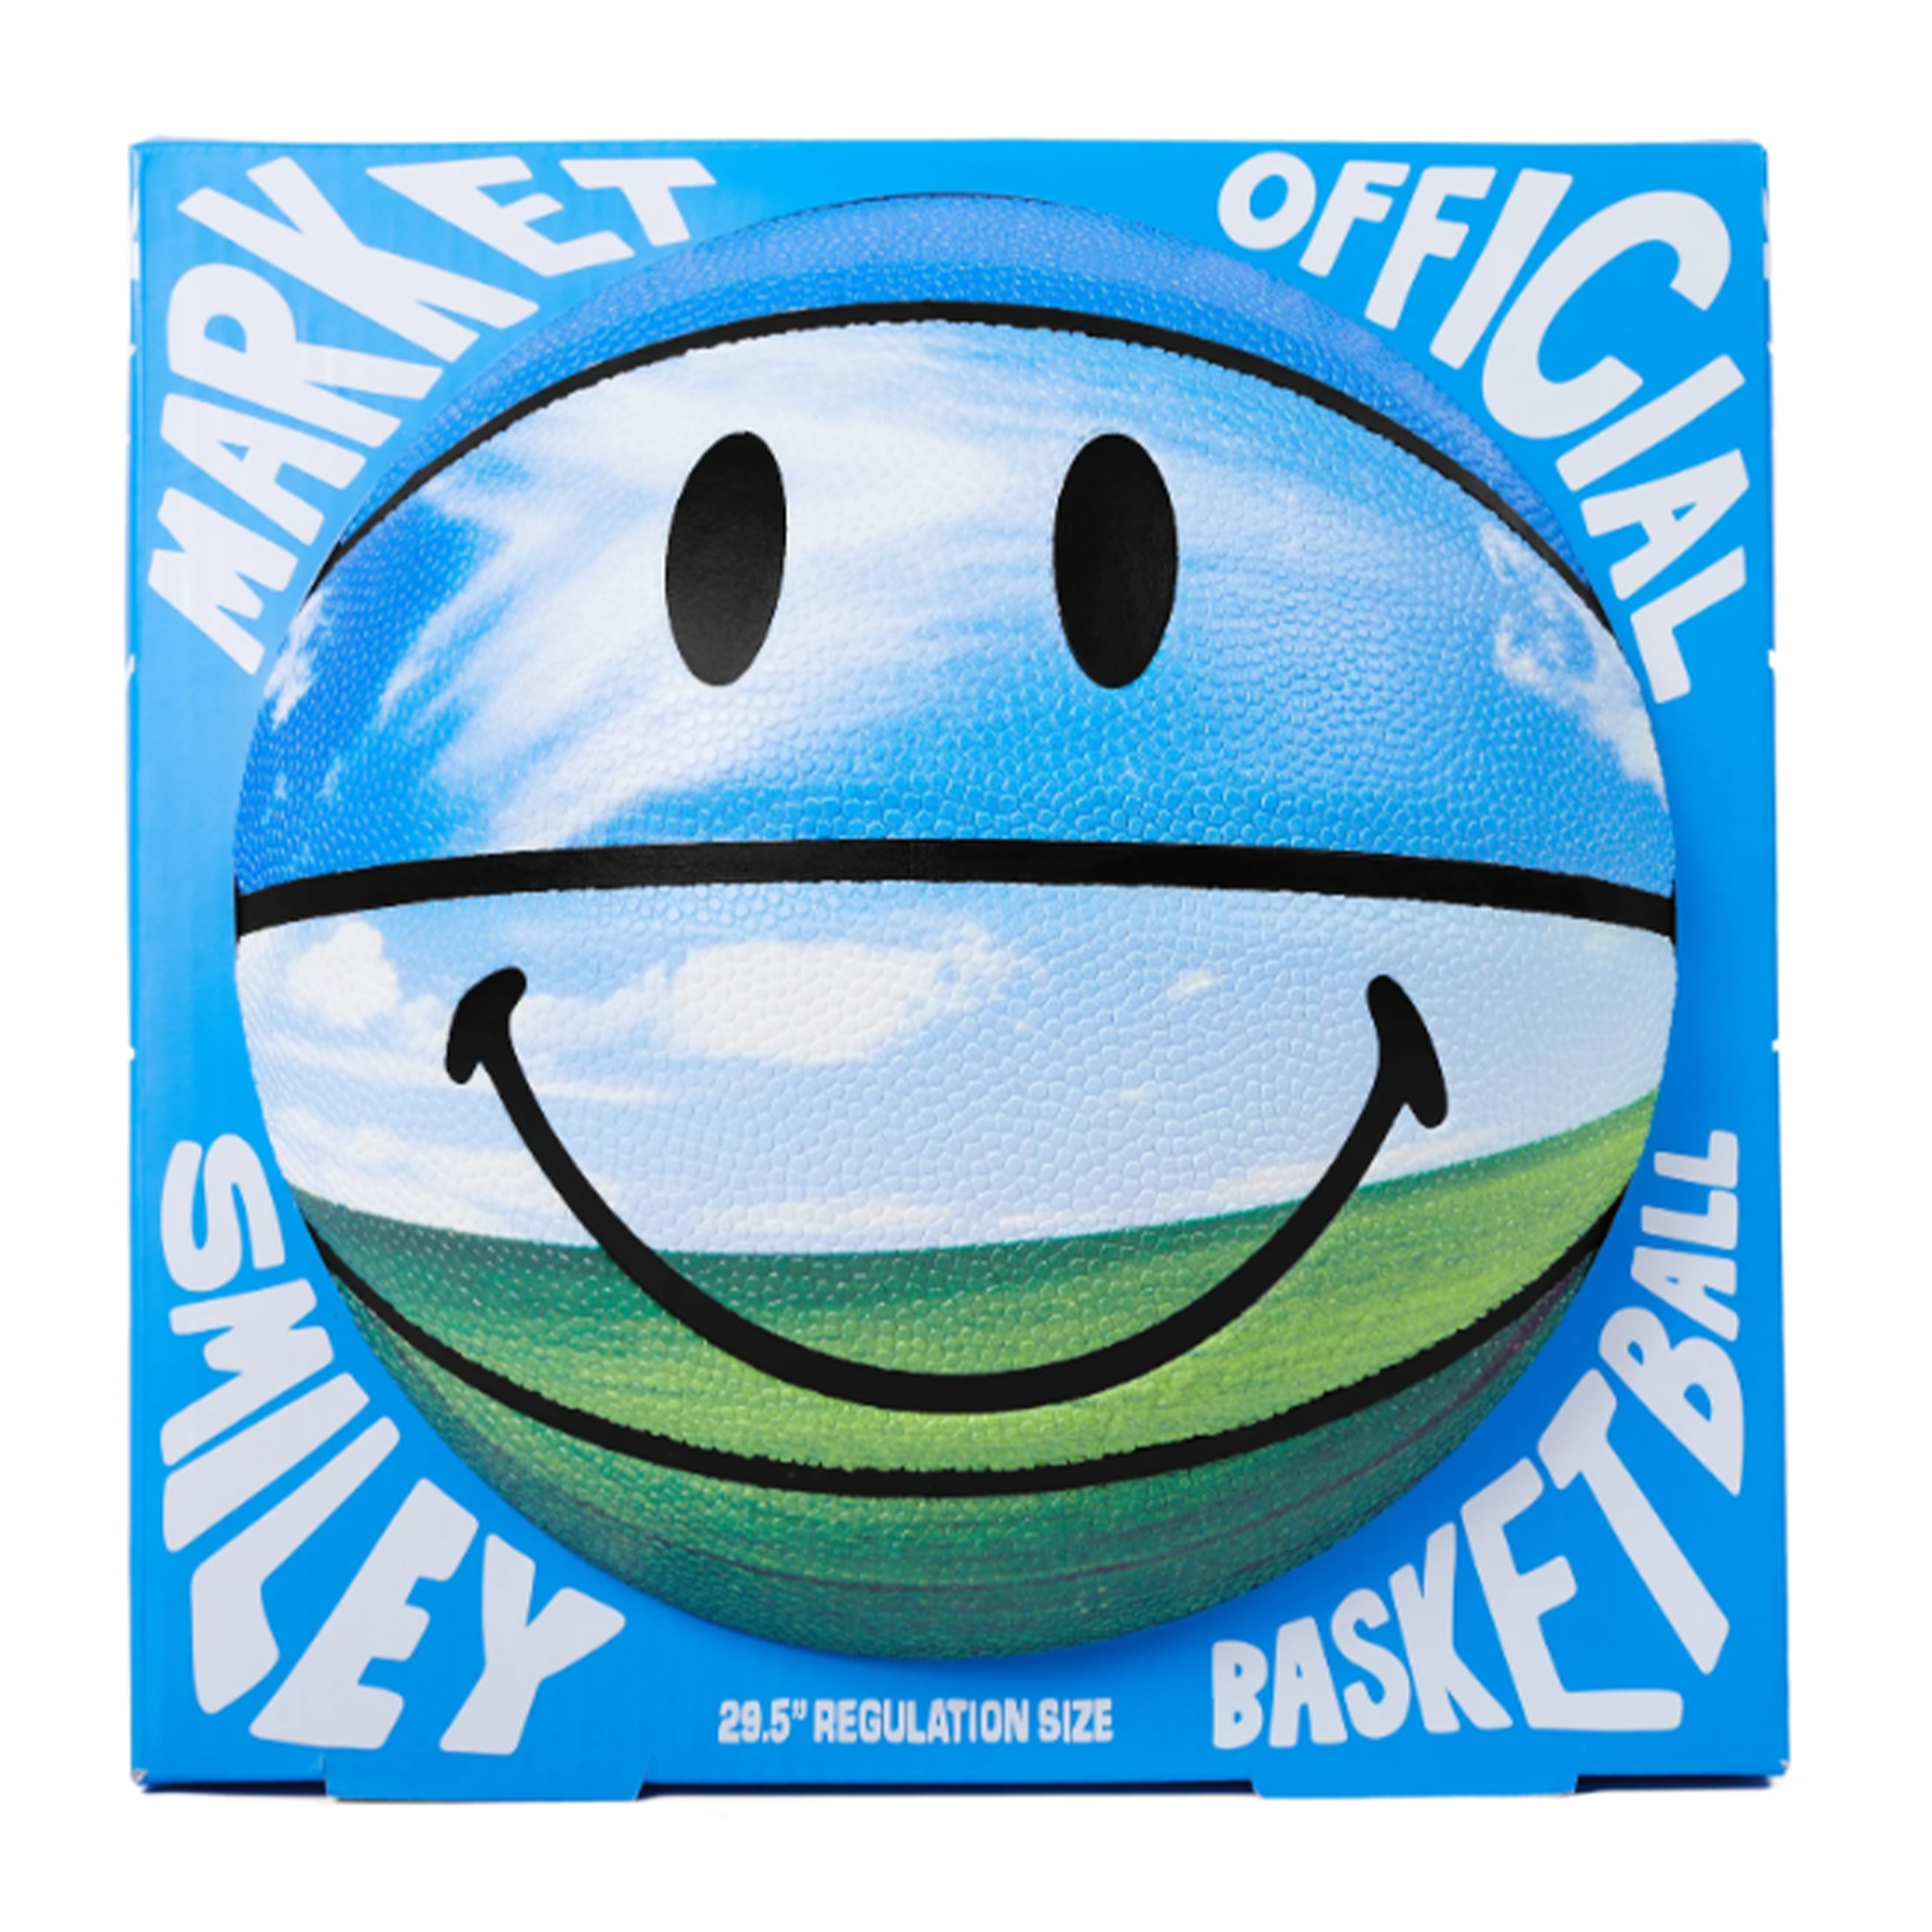 Market "Bliss" Smiley Basketball